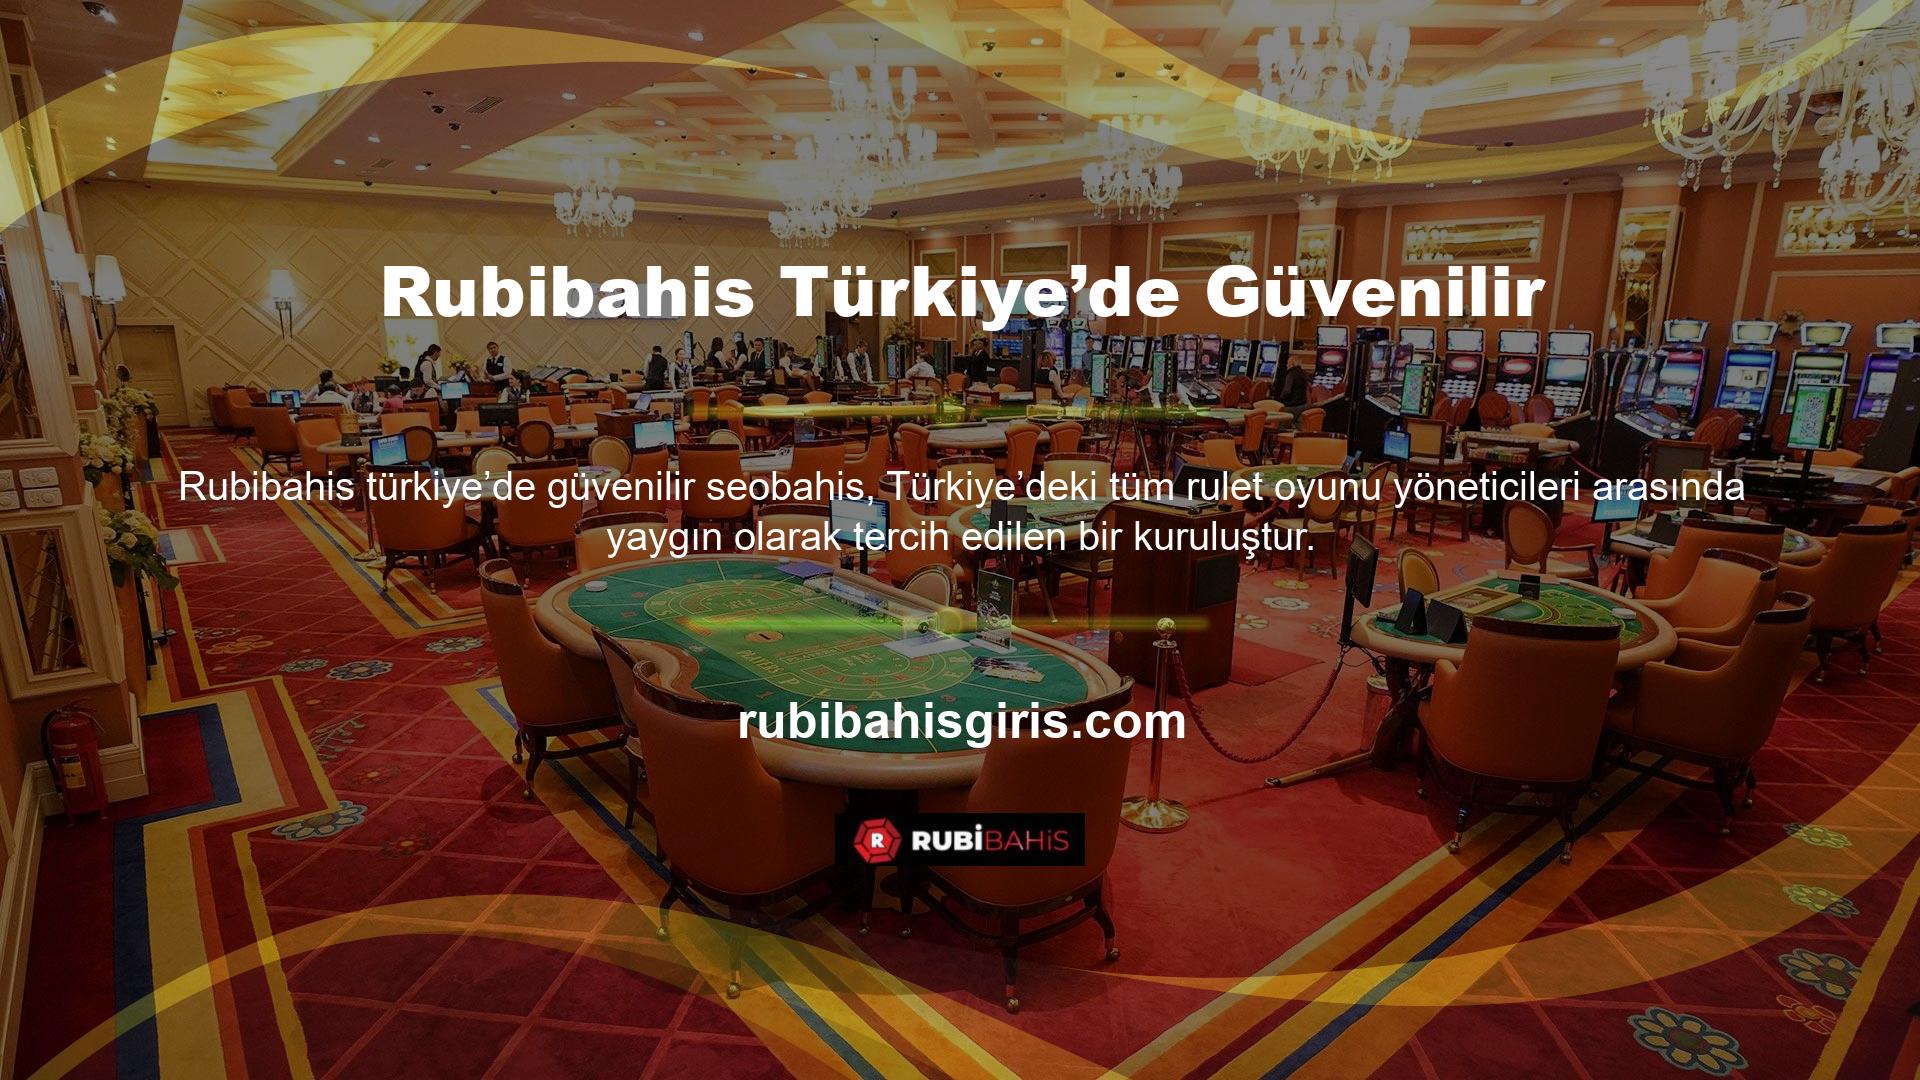 Poker oynamaya meraklı olanlar için Türkiye’deki en iyi çevrimiçi casino platformlarından haberdar olmak çok önemlidir